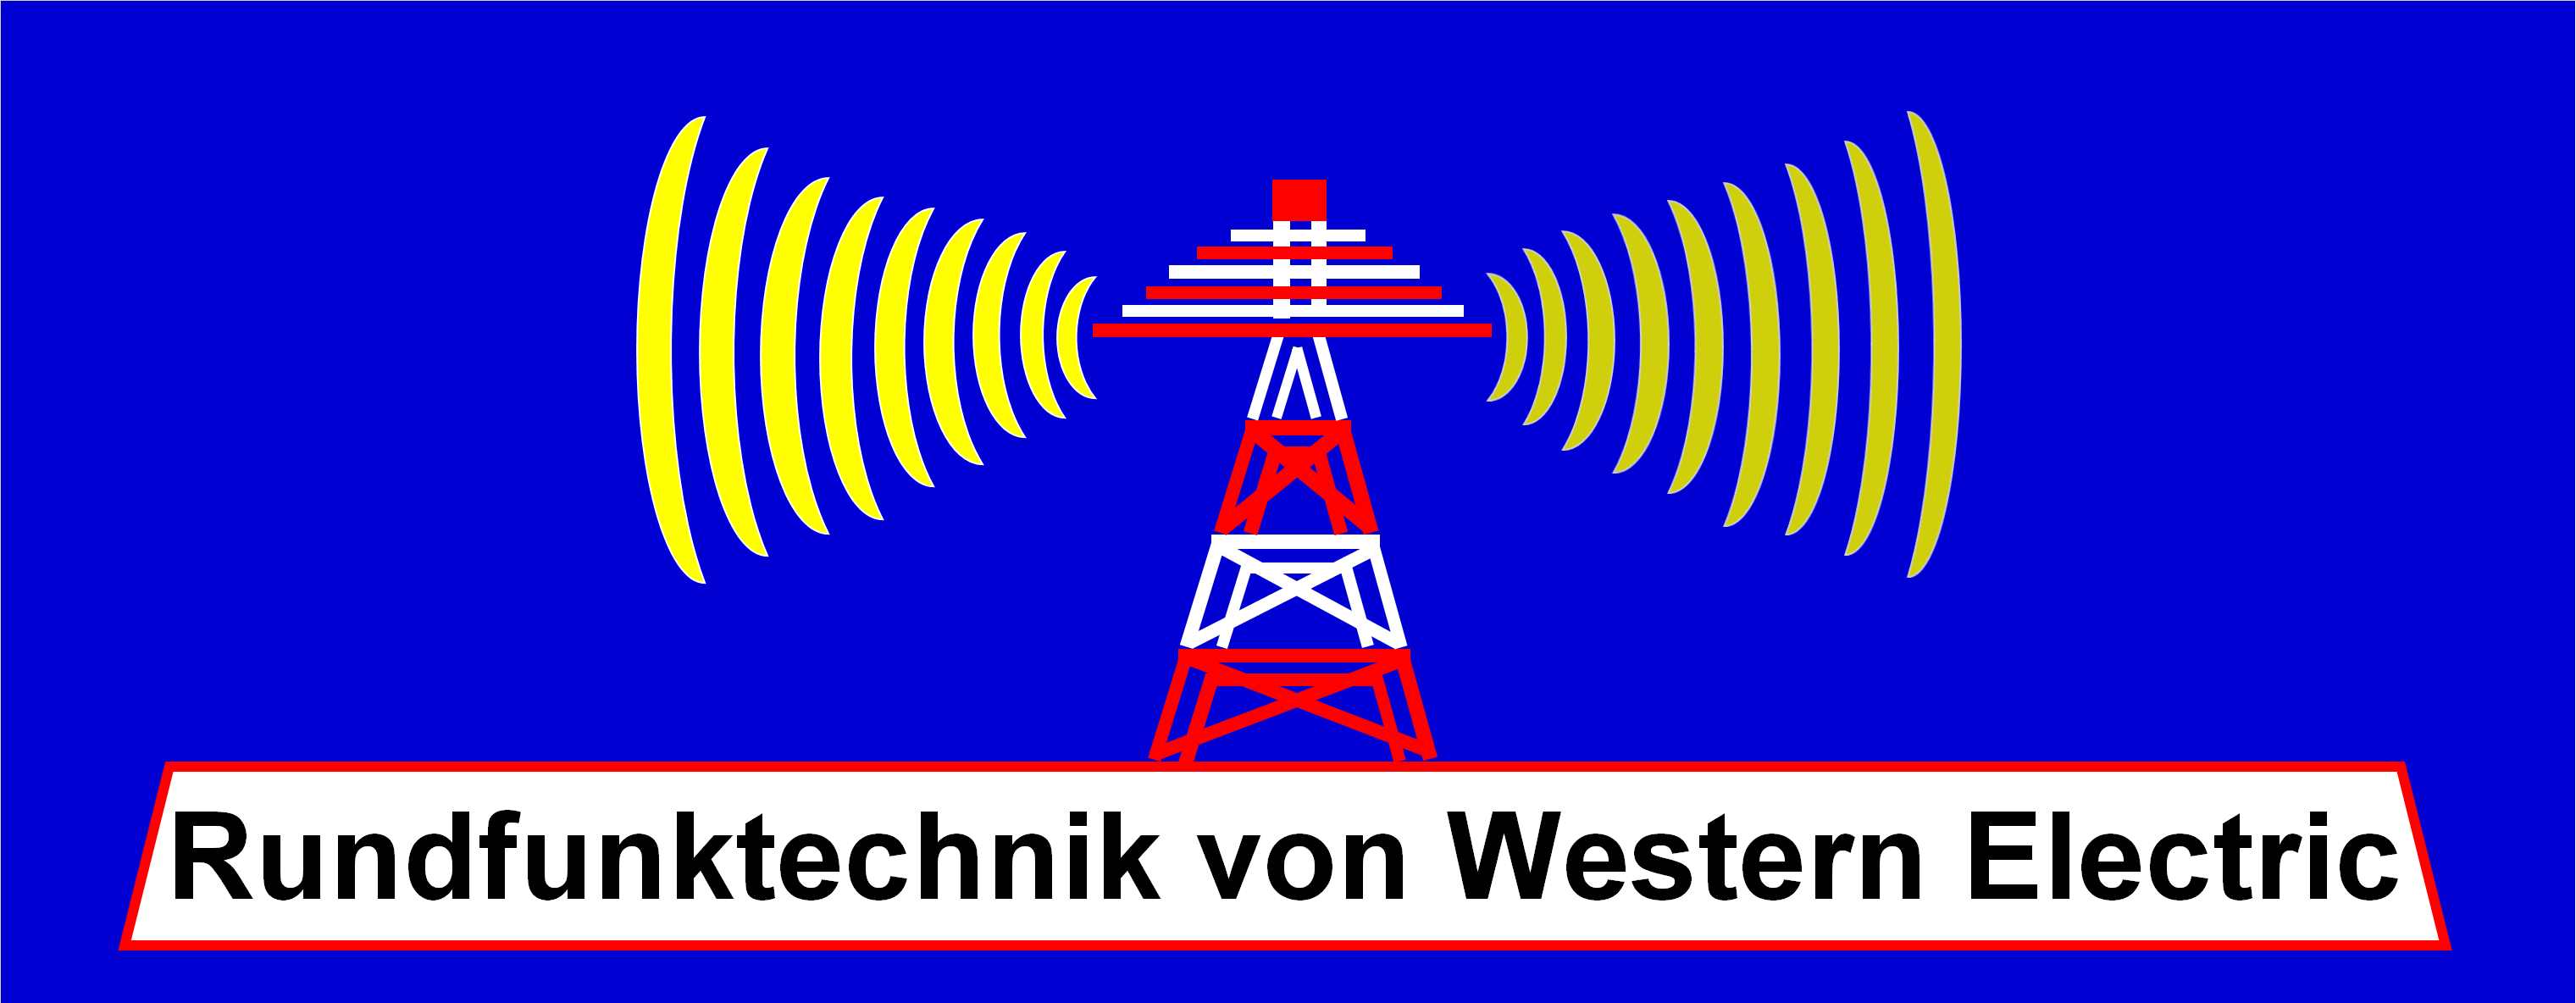 Rundfunktechnik von Western Electric